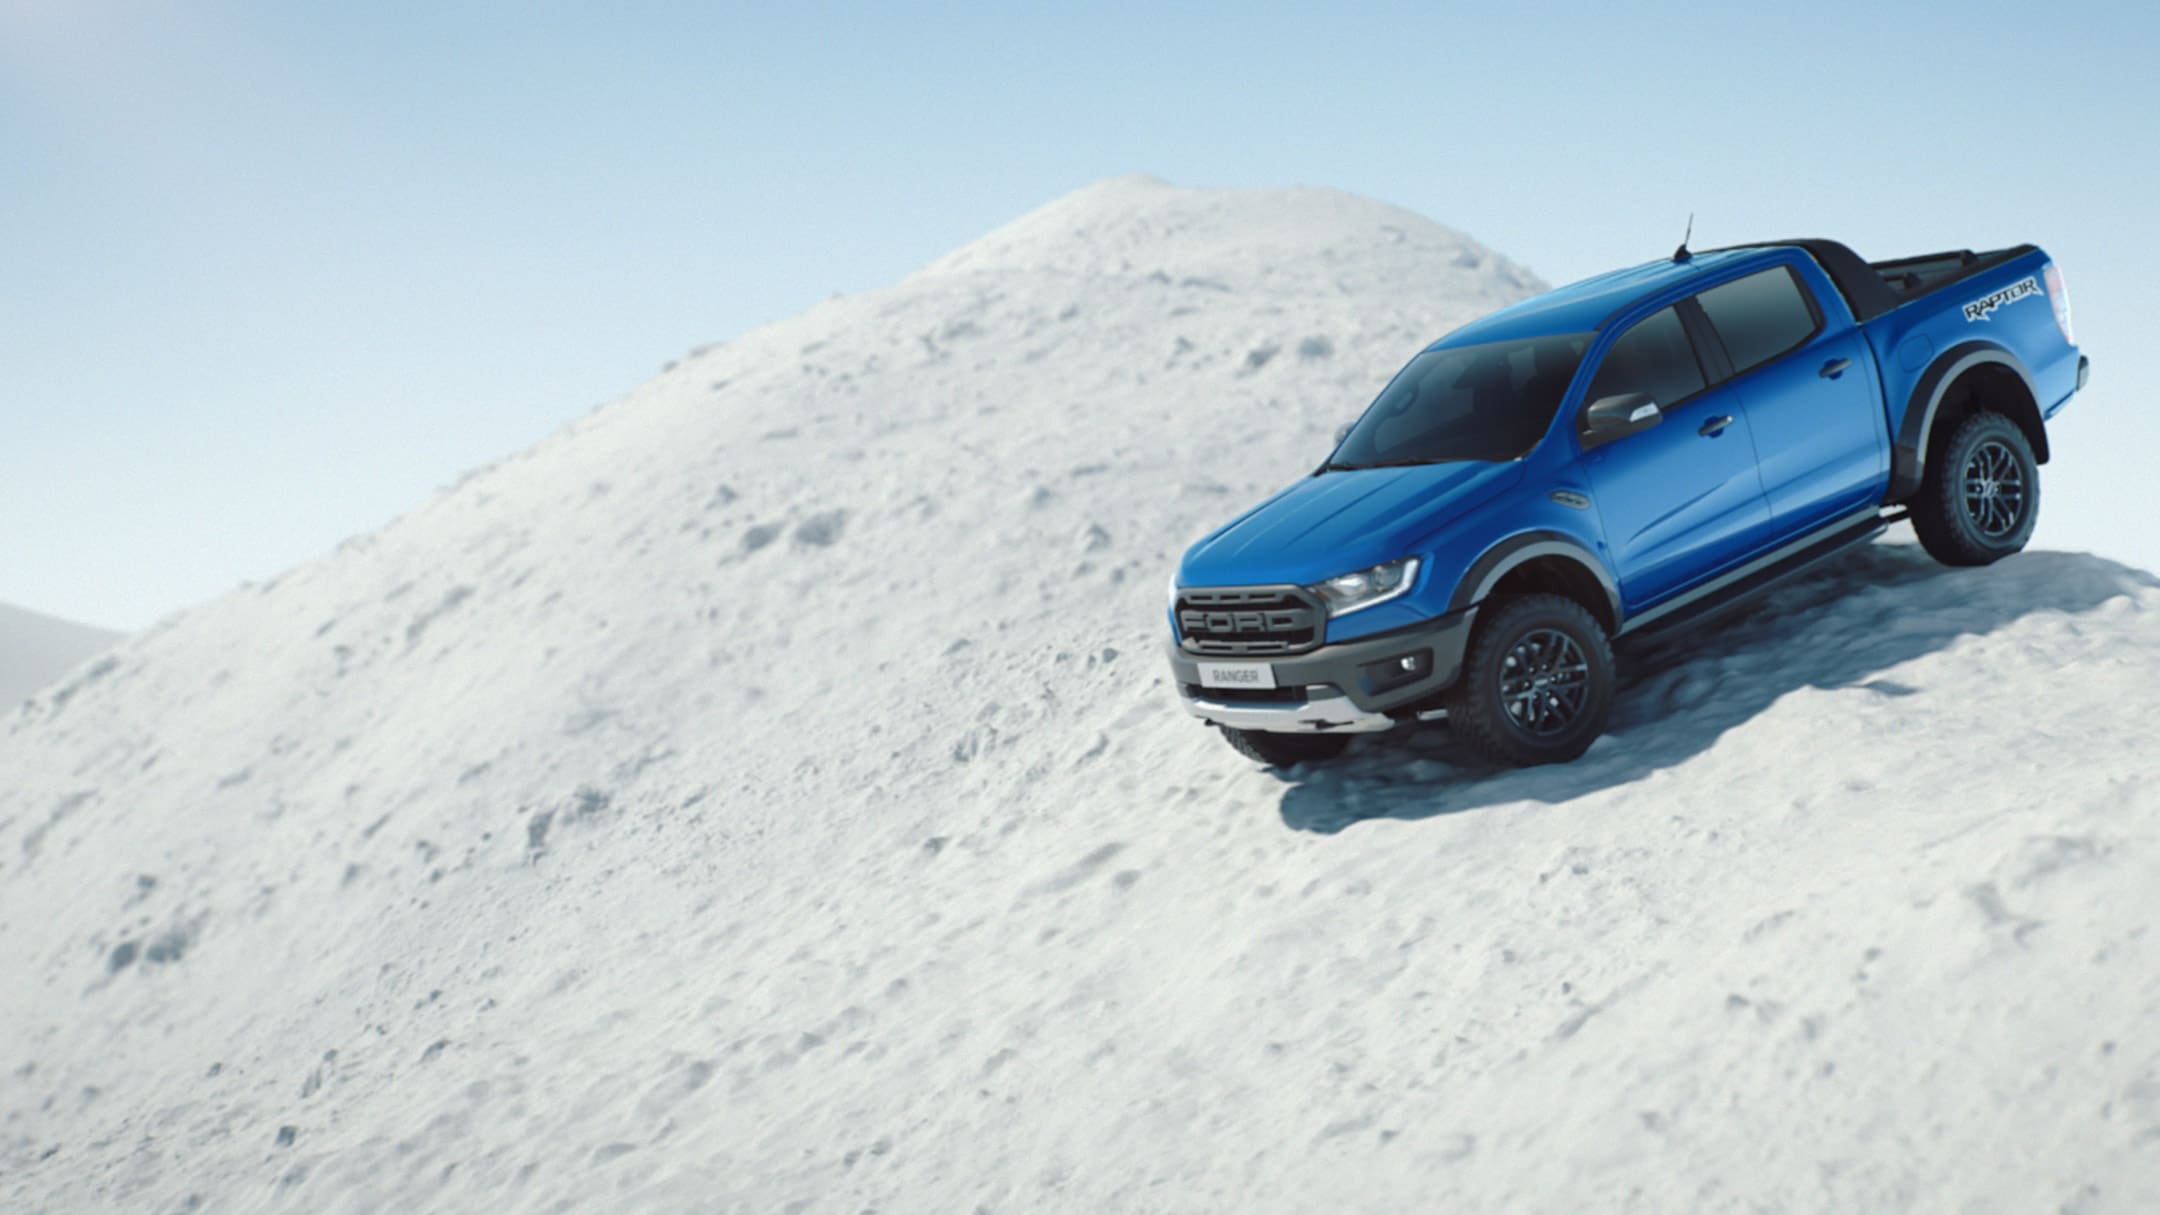 Ford Ranger bleu ¾ vue latérale en descente en mouvement sur le sommet d'une montagne enneigée